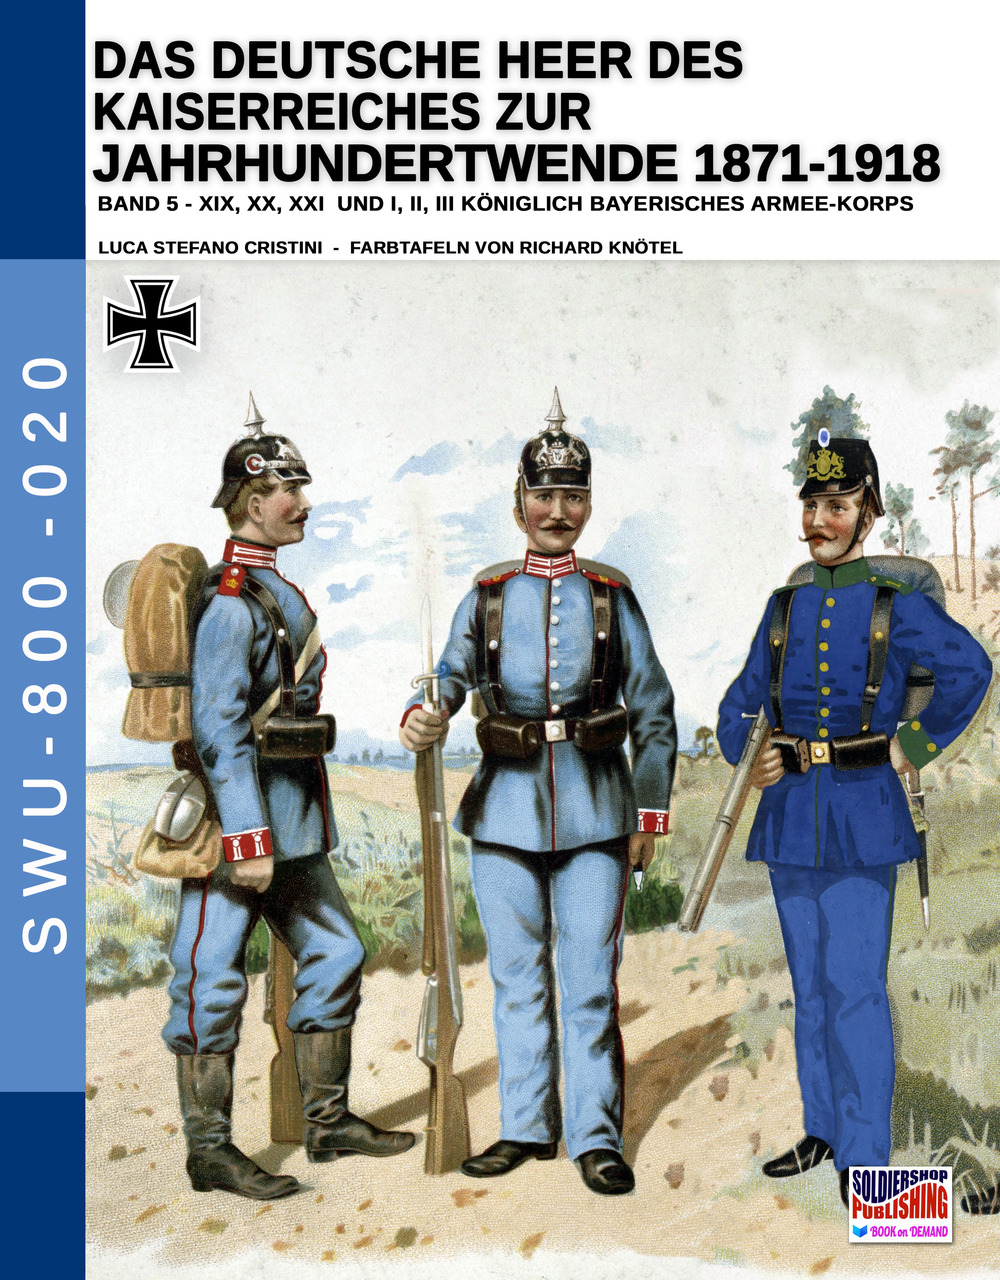 Das deutsche heer des kaiserreiches zur jahrhundertwende 1871-1918. Nuova ediz.. Vol. 5